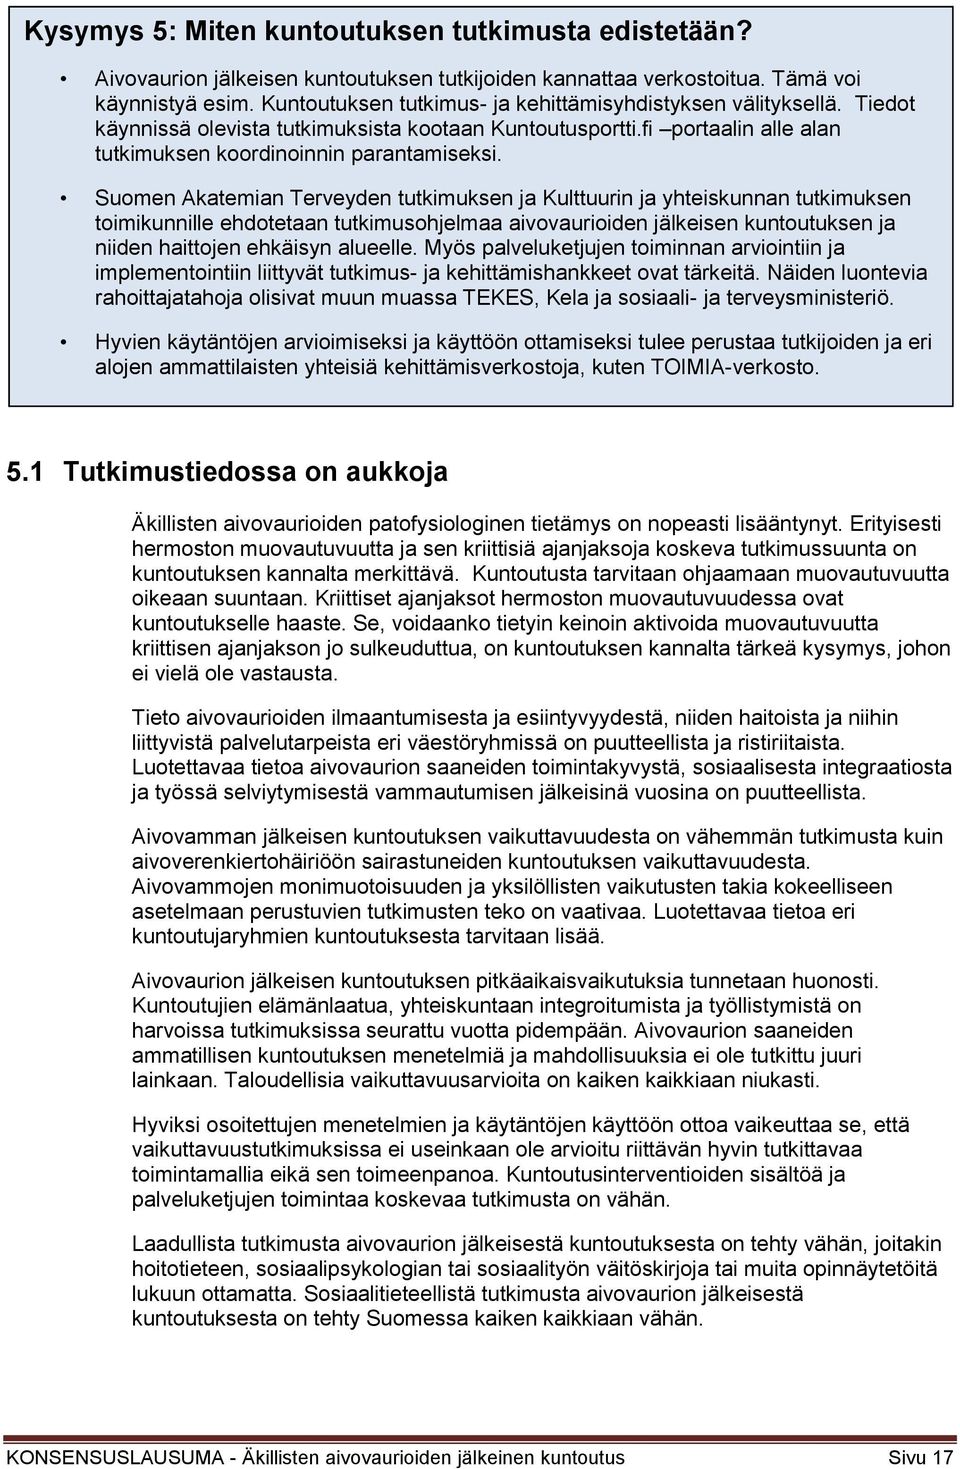 Suomen Akatemian Terveyden tutkimuksen ja Kulttuurin ja yhteiskunnan tutkimuksen toimikunnille ehdotetaan tutkimusohjelmaa aivovaurioiden jälkeisen kuntoutuksen ja niiden haittojen ehkäisyn alueelle.